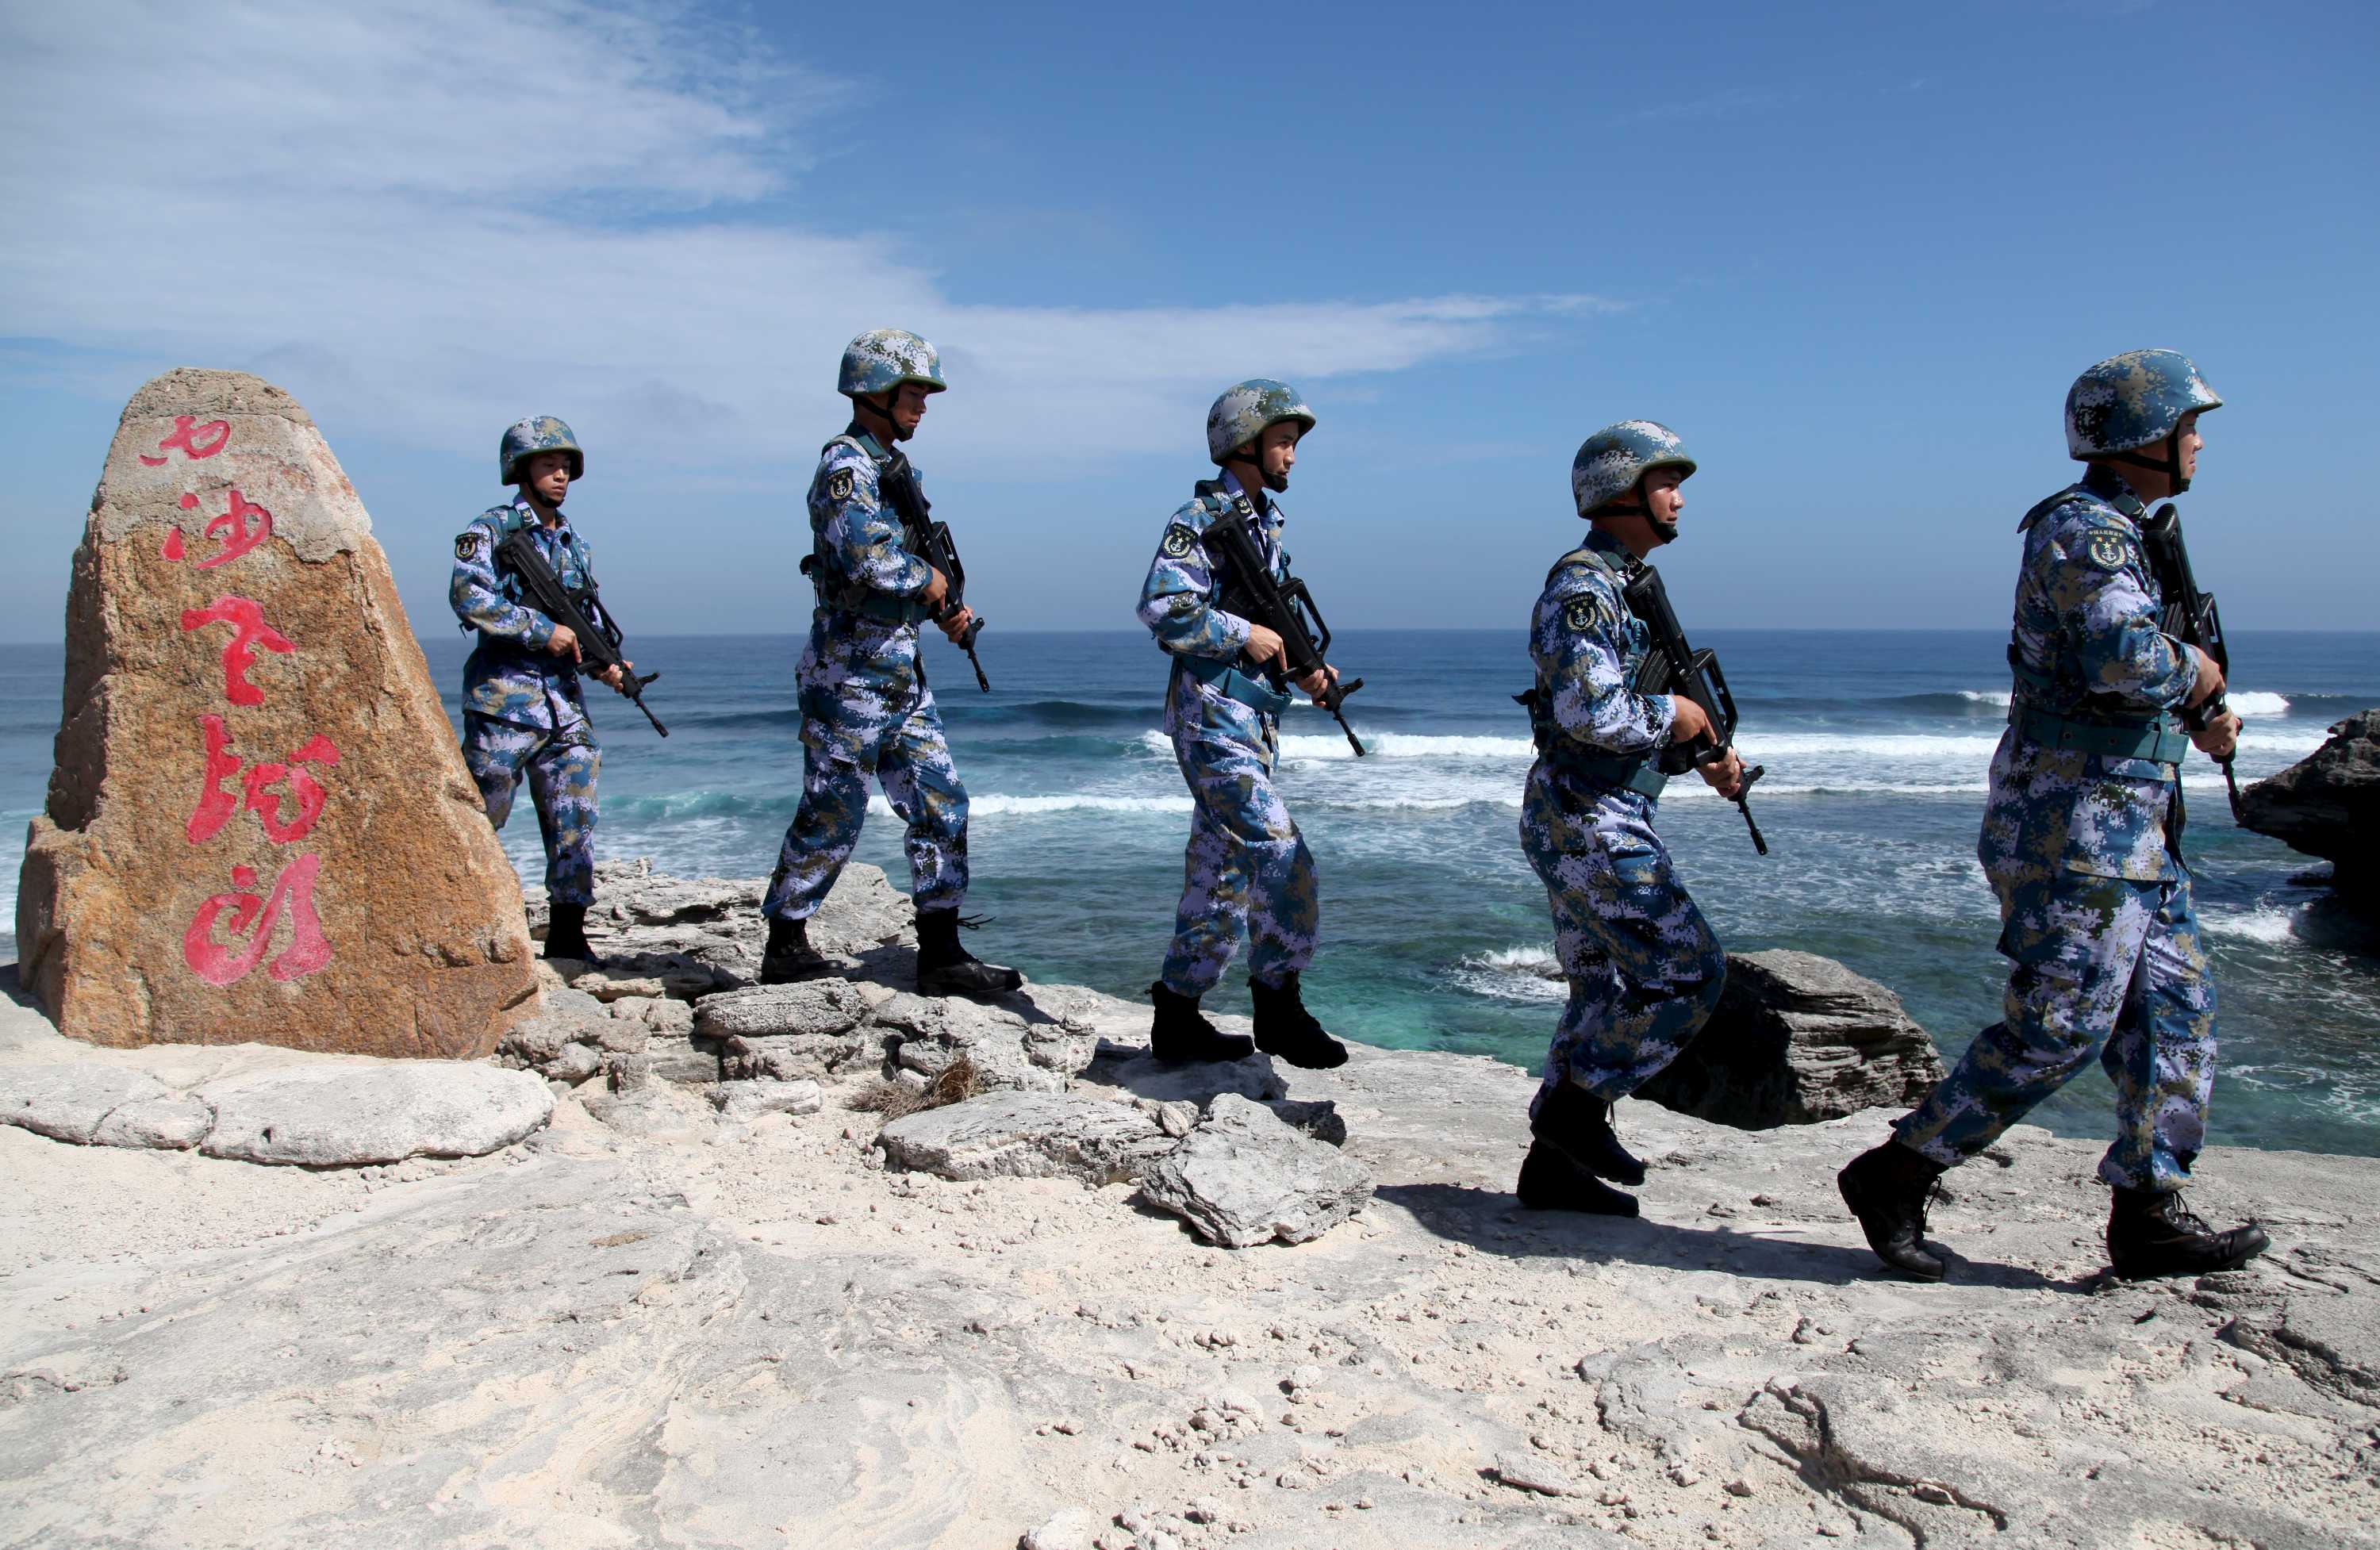 中国人民解放军海军士兵在南中国海的一个岛屿上巡逻时排成一列。